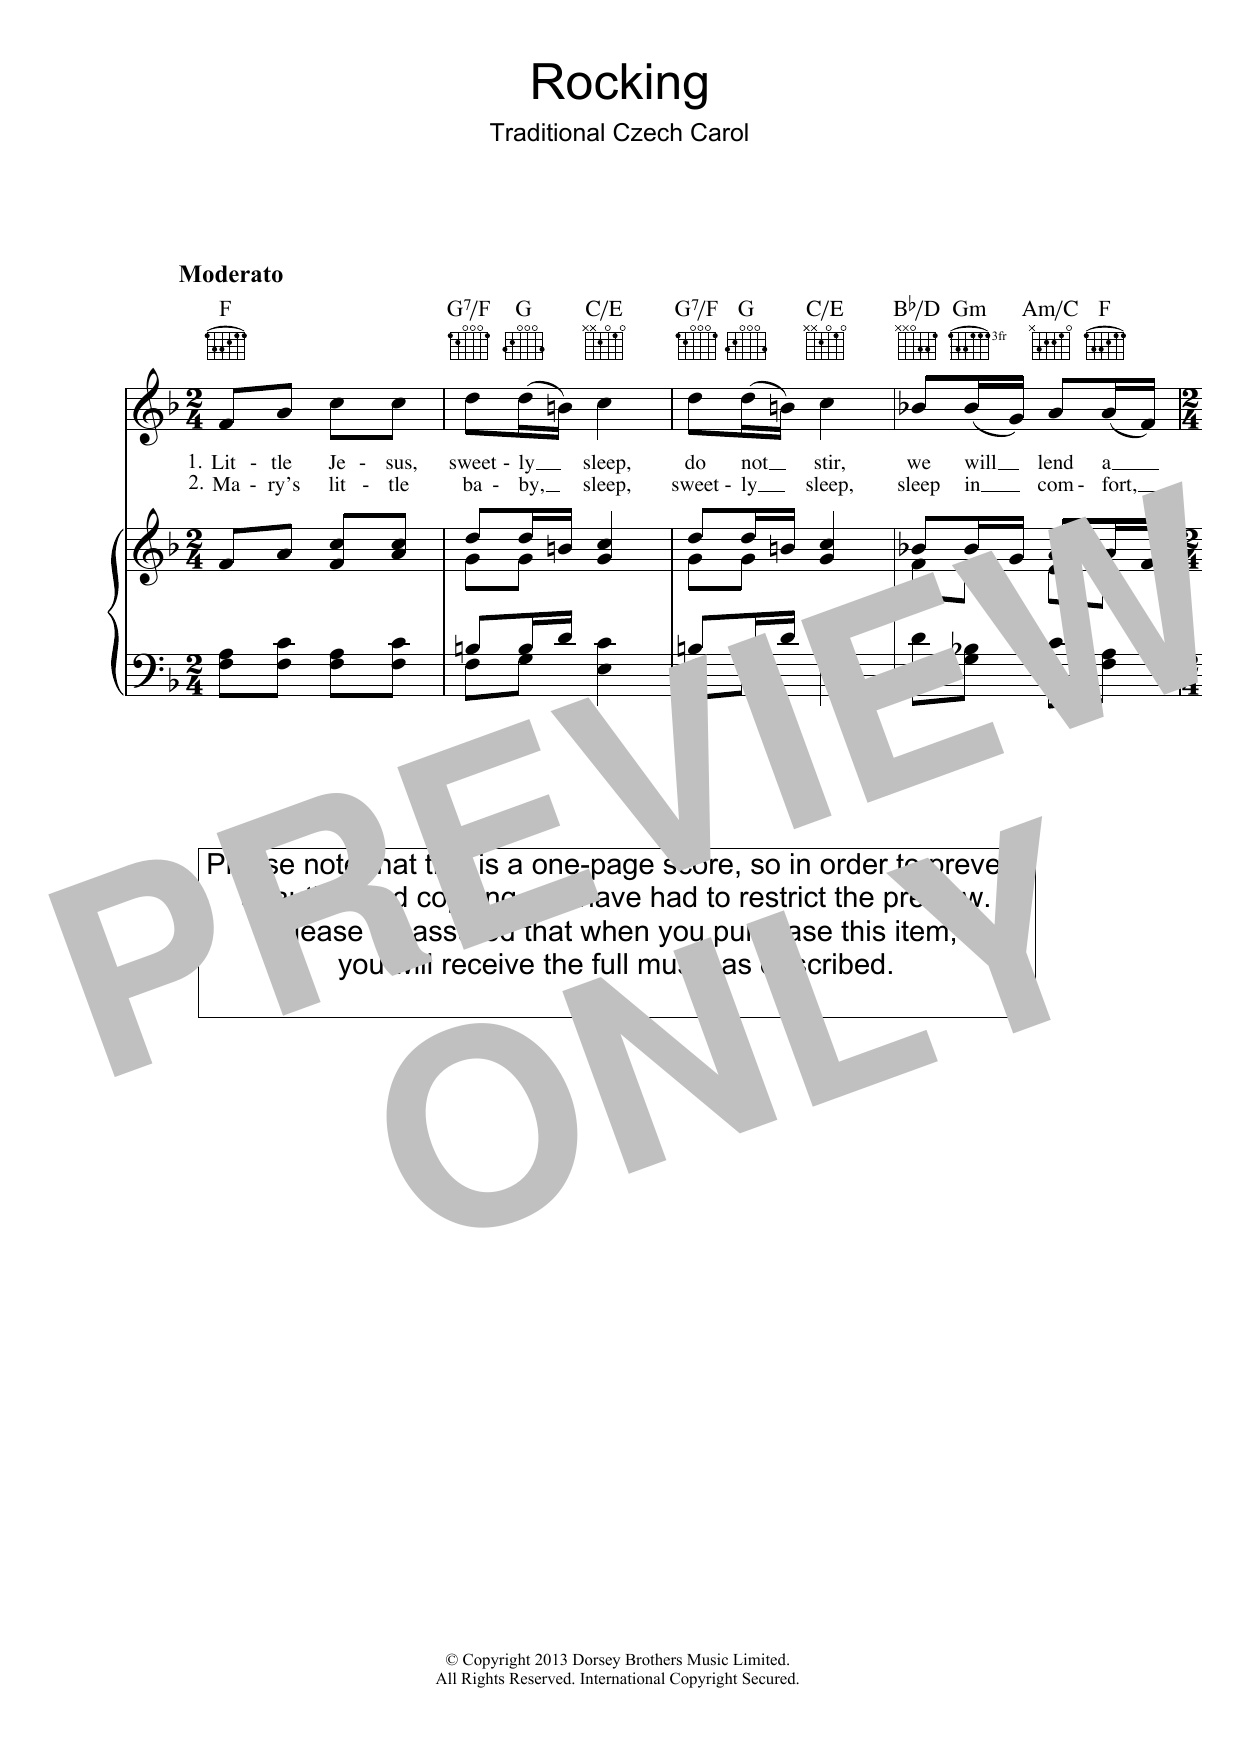 Christmas Carol Little Jesus (Rocking Carol) Sheet Music Notes & Chords for Lyrics & Chords - Download or Print PDF